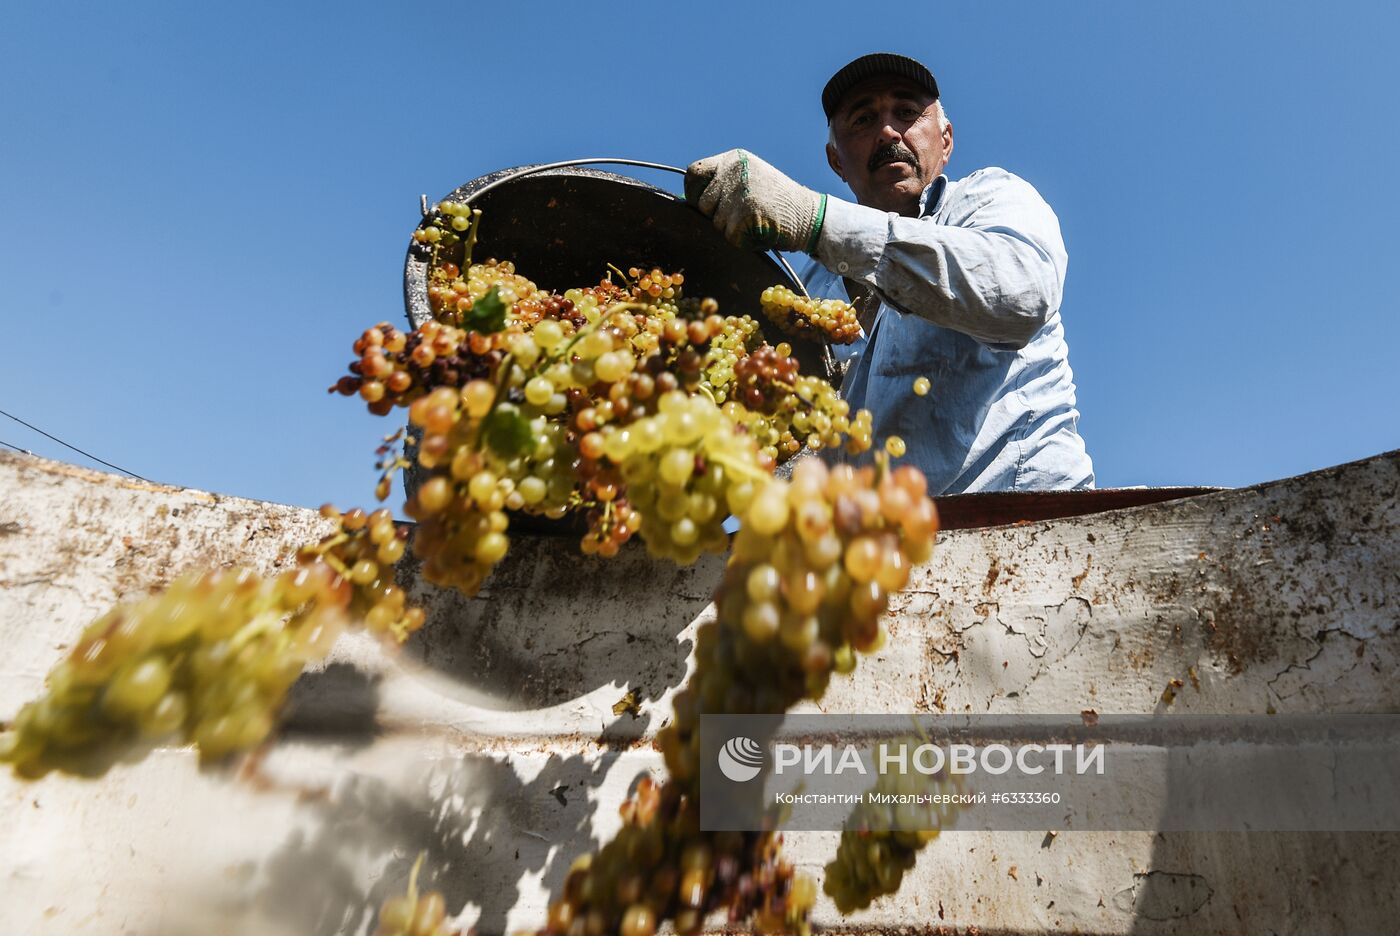 Сбор урожая винограда в Крыму